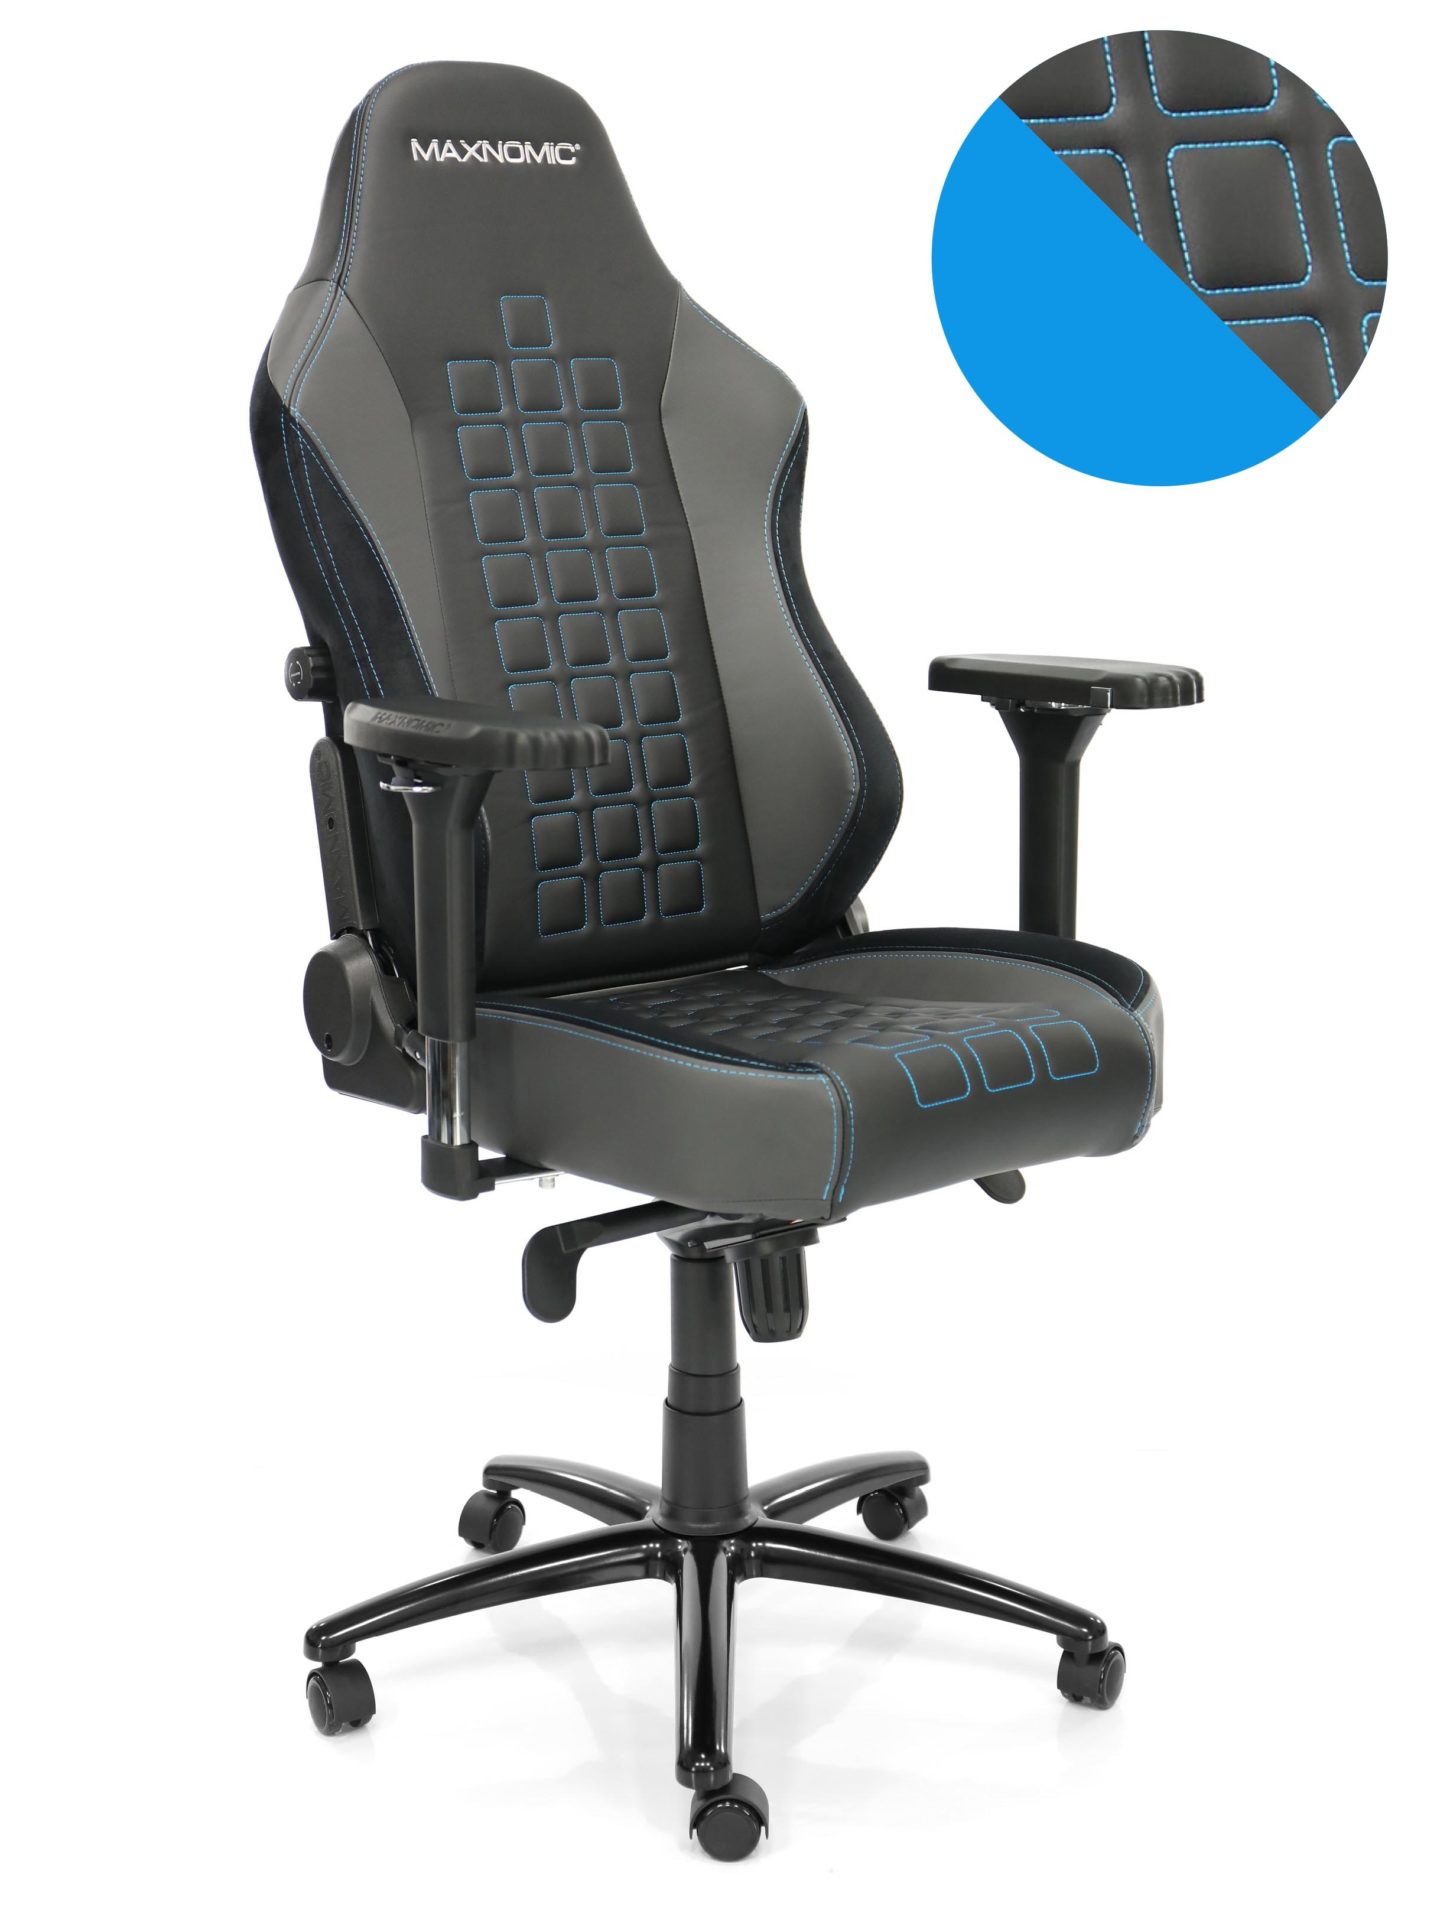 eSport-Stuhl Modell QUADCEPTOR OFC von Maxnomic® in Brilliant Blue. Ein schwarzer Bürostuhl mit quadratischen Absteppungen, blauen Nähten und designgeschützen Maxnomic®-4D-Armlehnen.